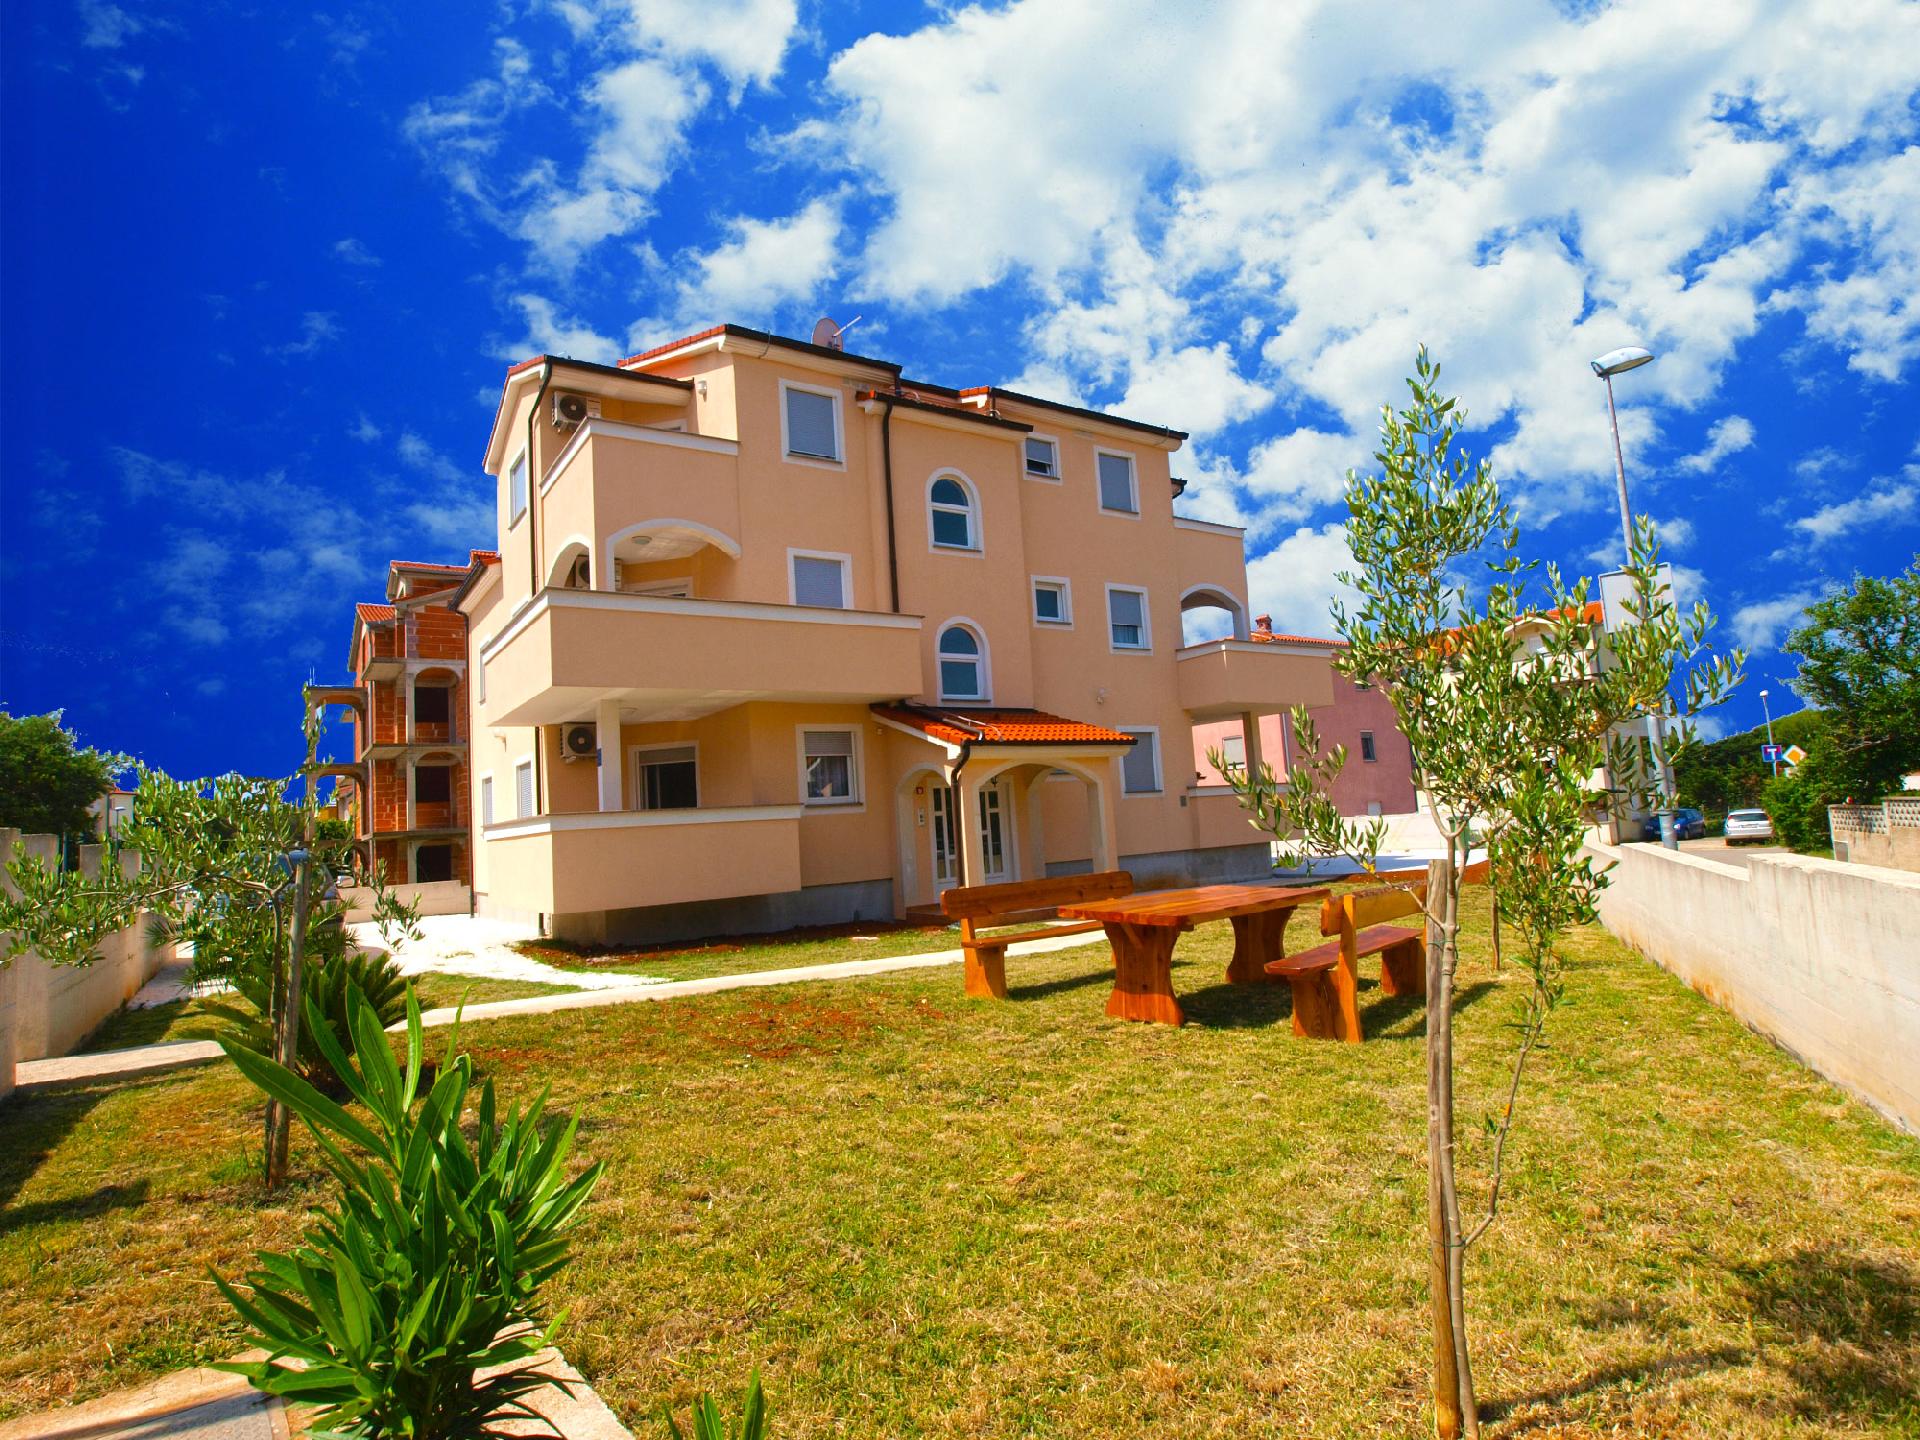 Ferienwohnung für 4 Personen ca. 50 m² i  in Istrien